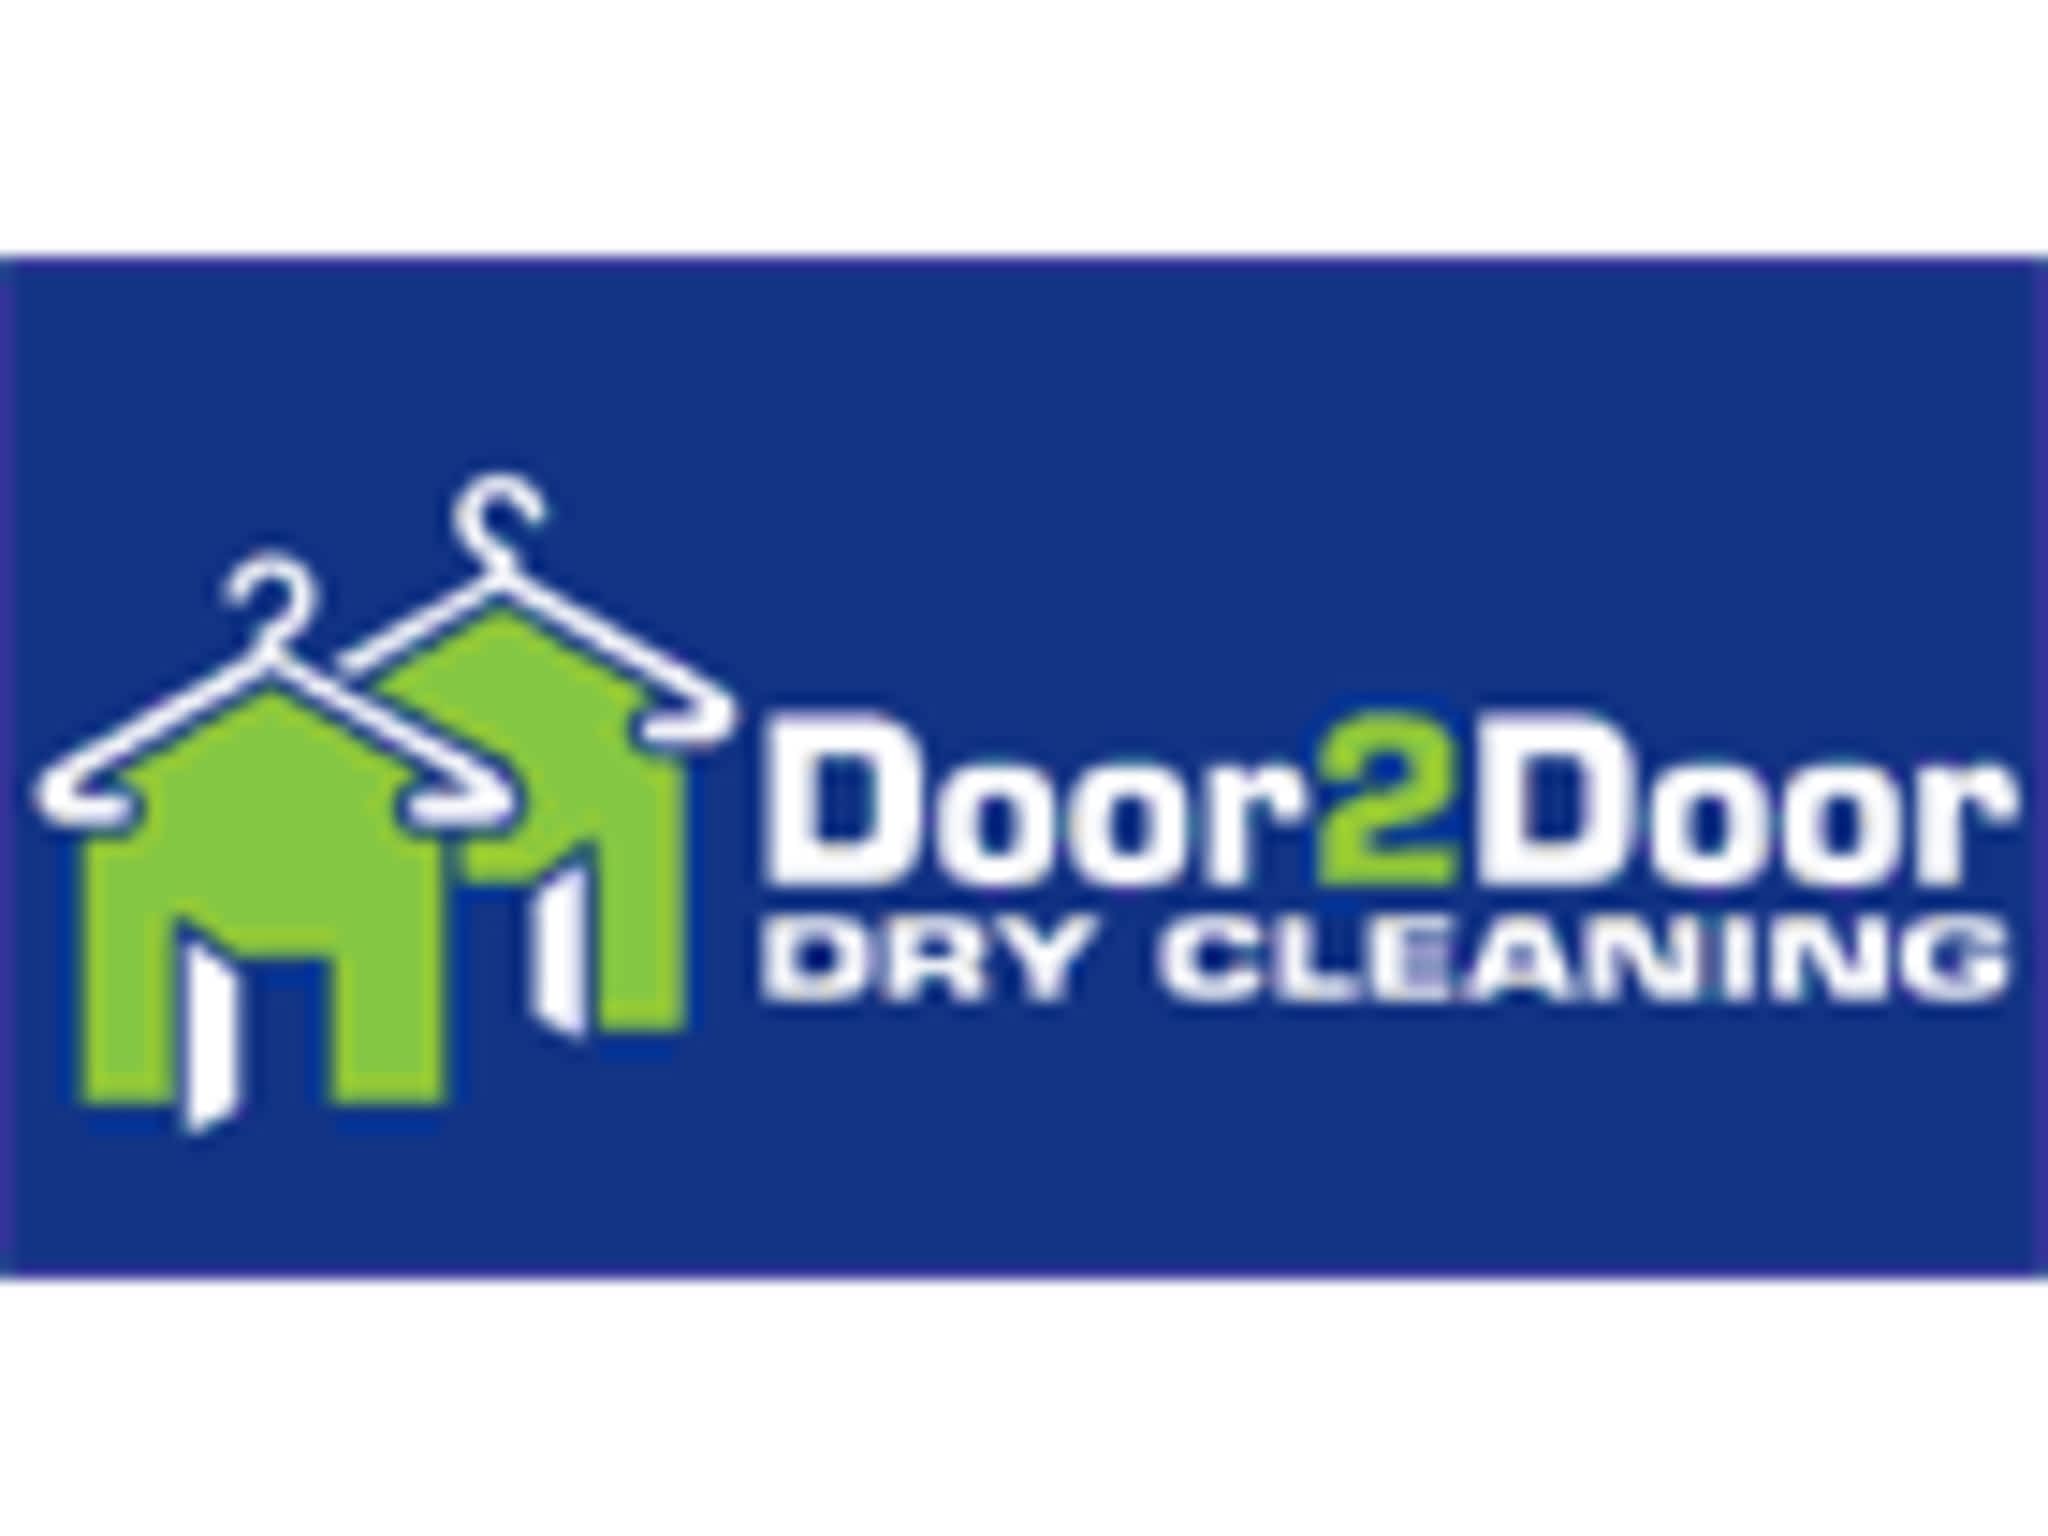 photo Door 2 Door Dry Cleaning